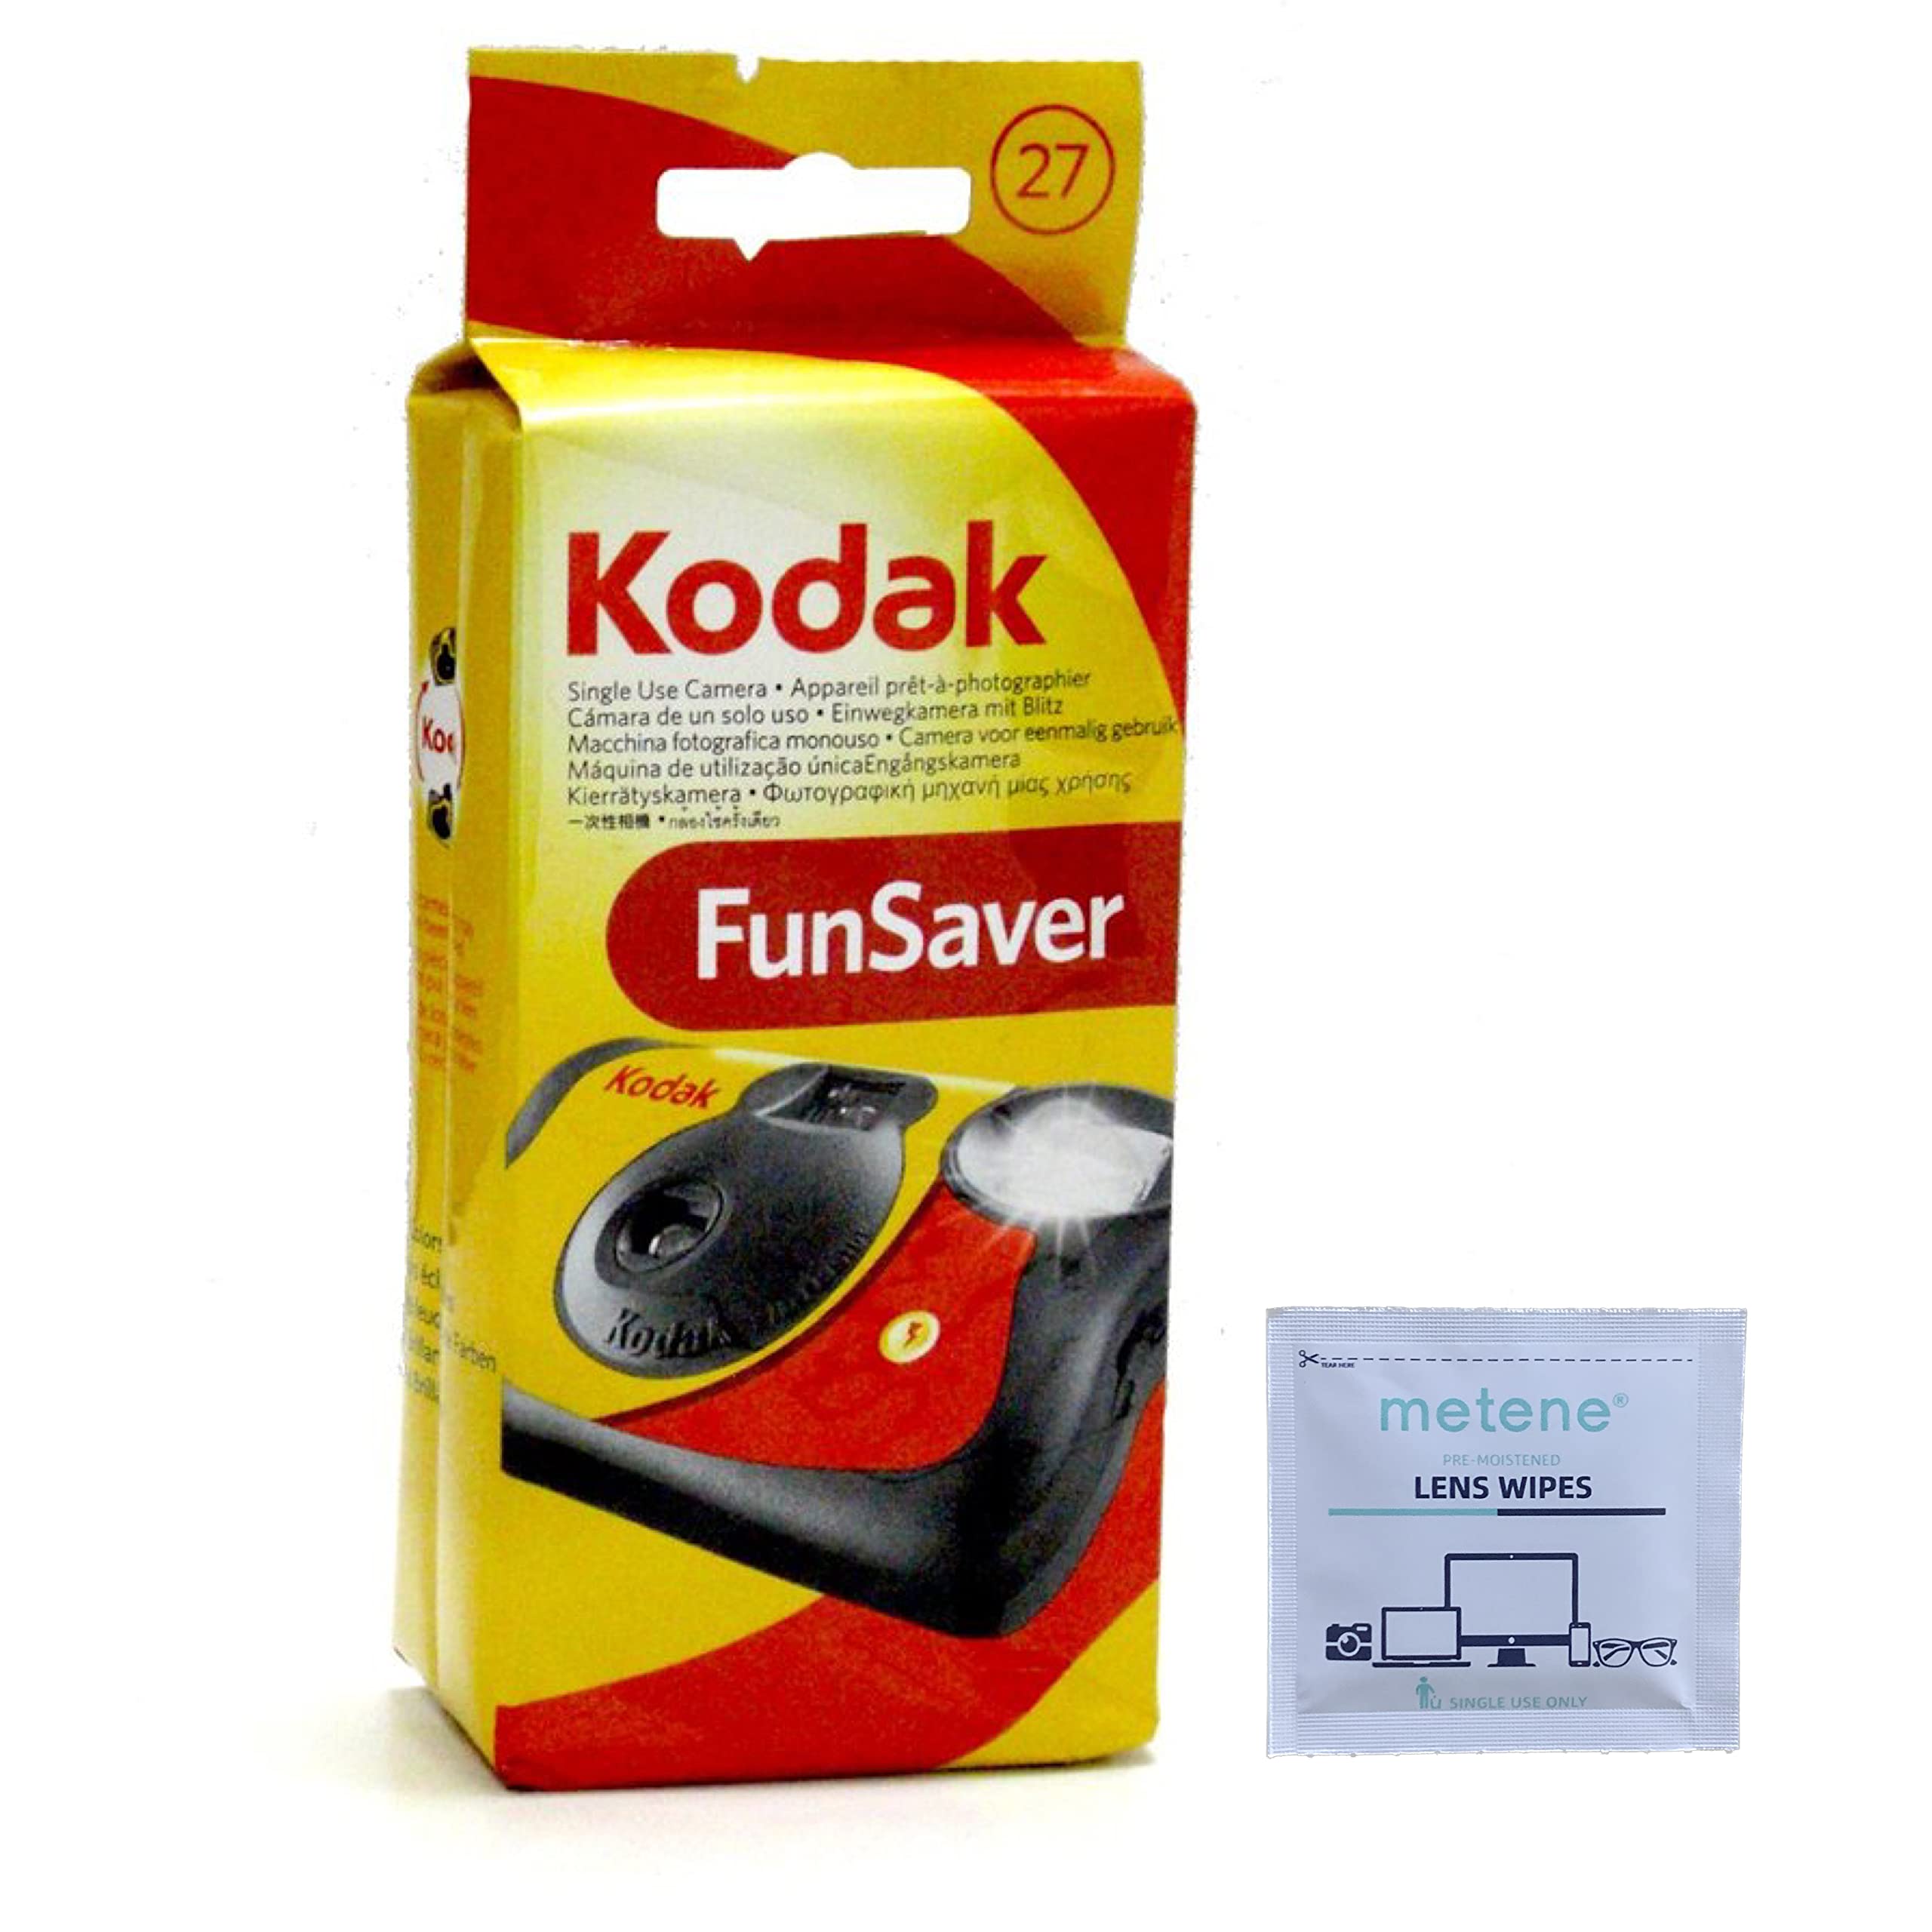 Kodak Пакет Fun Saver Single Use Camera (6 шт.) (6 шт.)